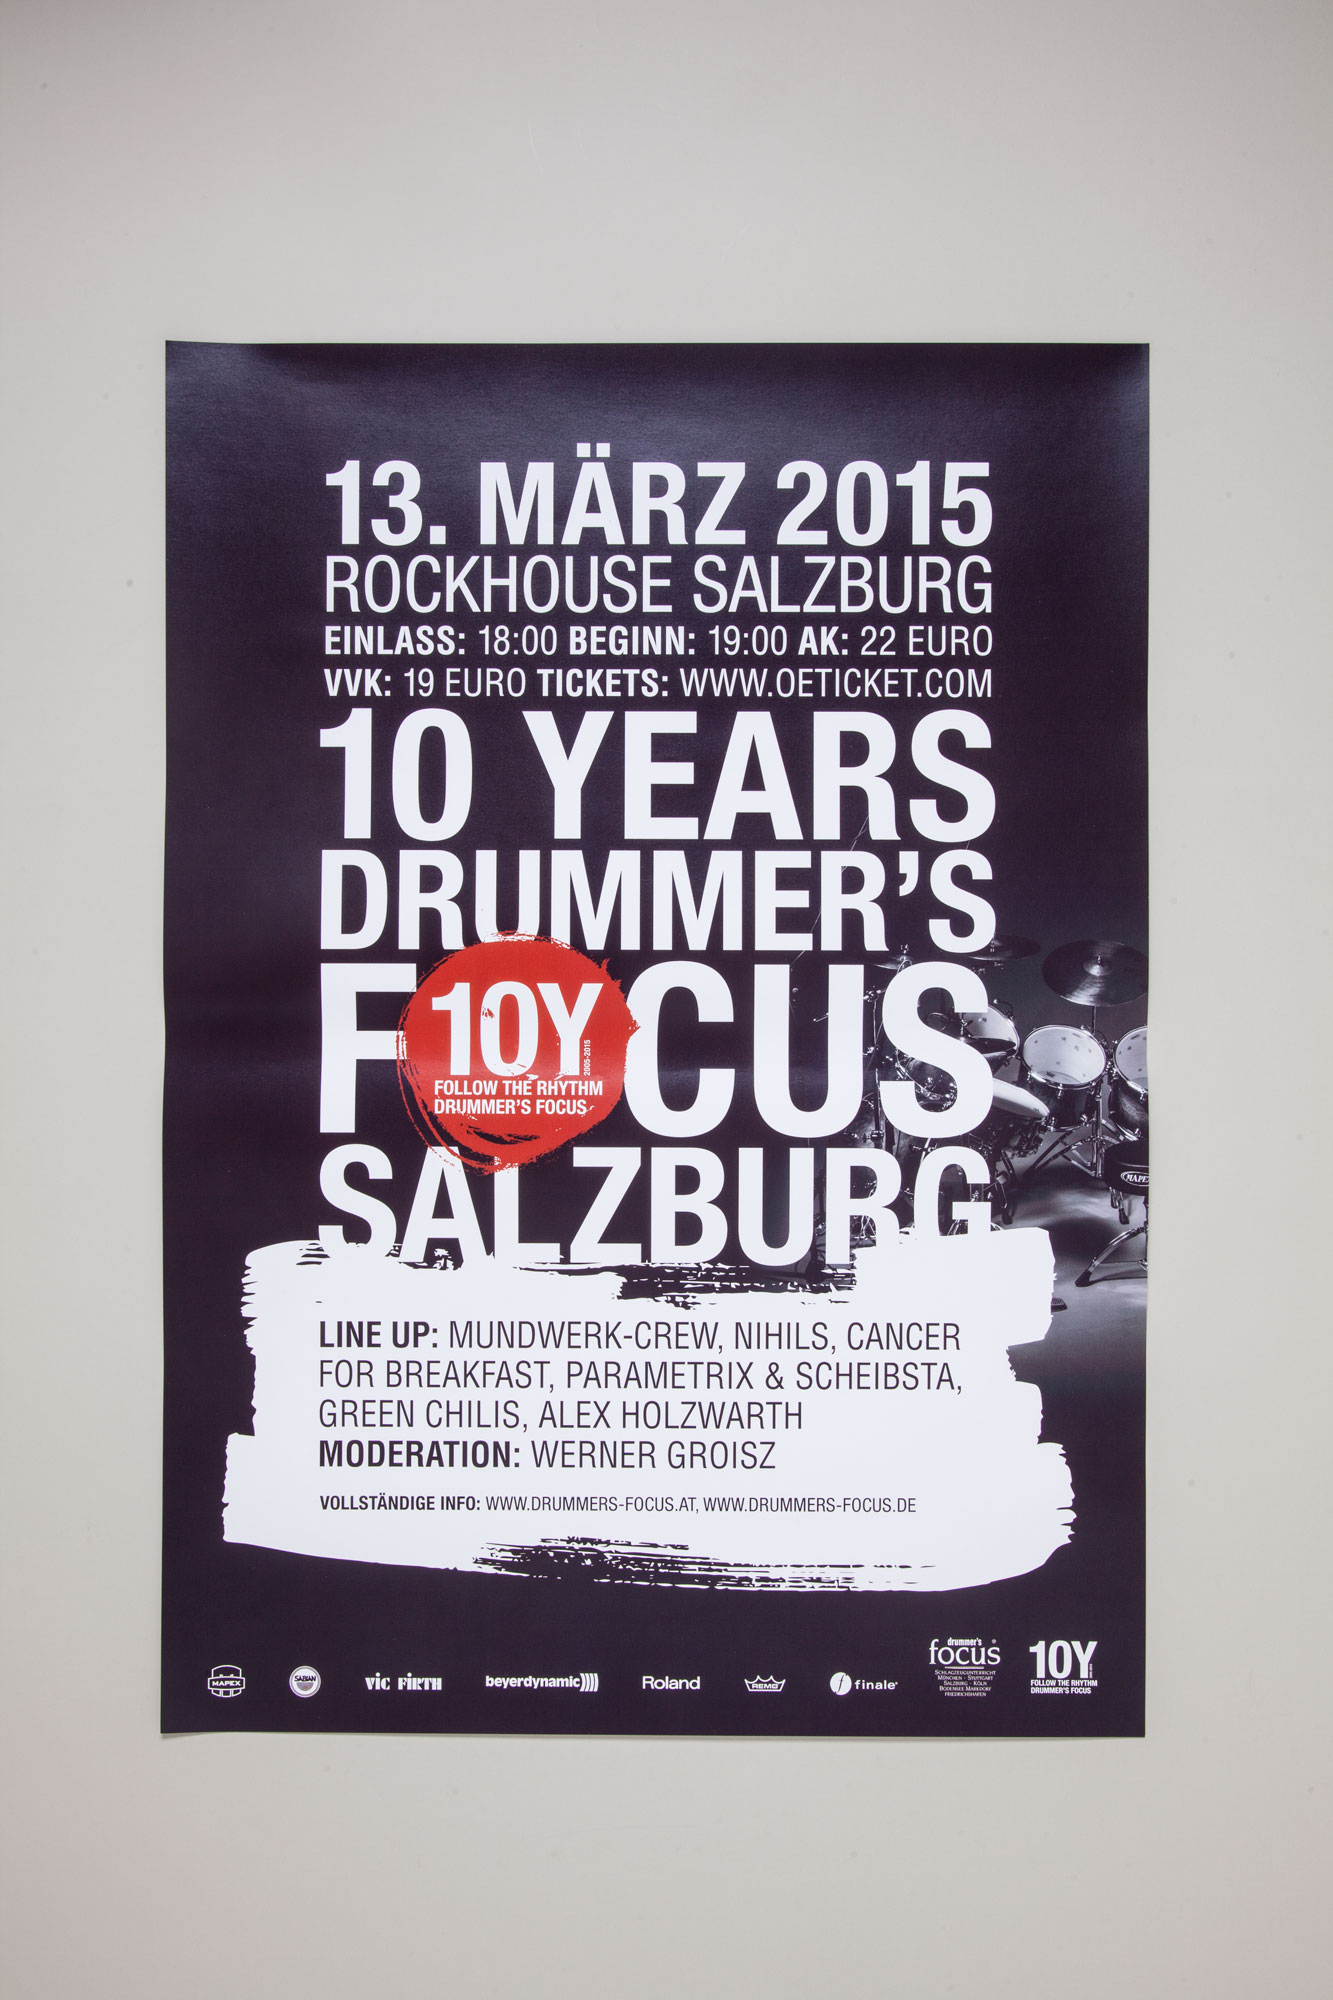 75a Büro für Gestaltung aus Stuttgart gestaltet die Drucksachen für 10Y drummer's focus Salzburg